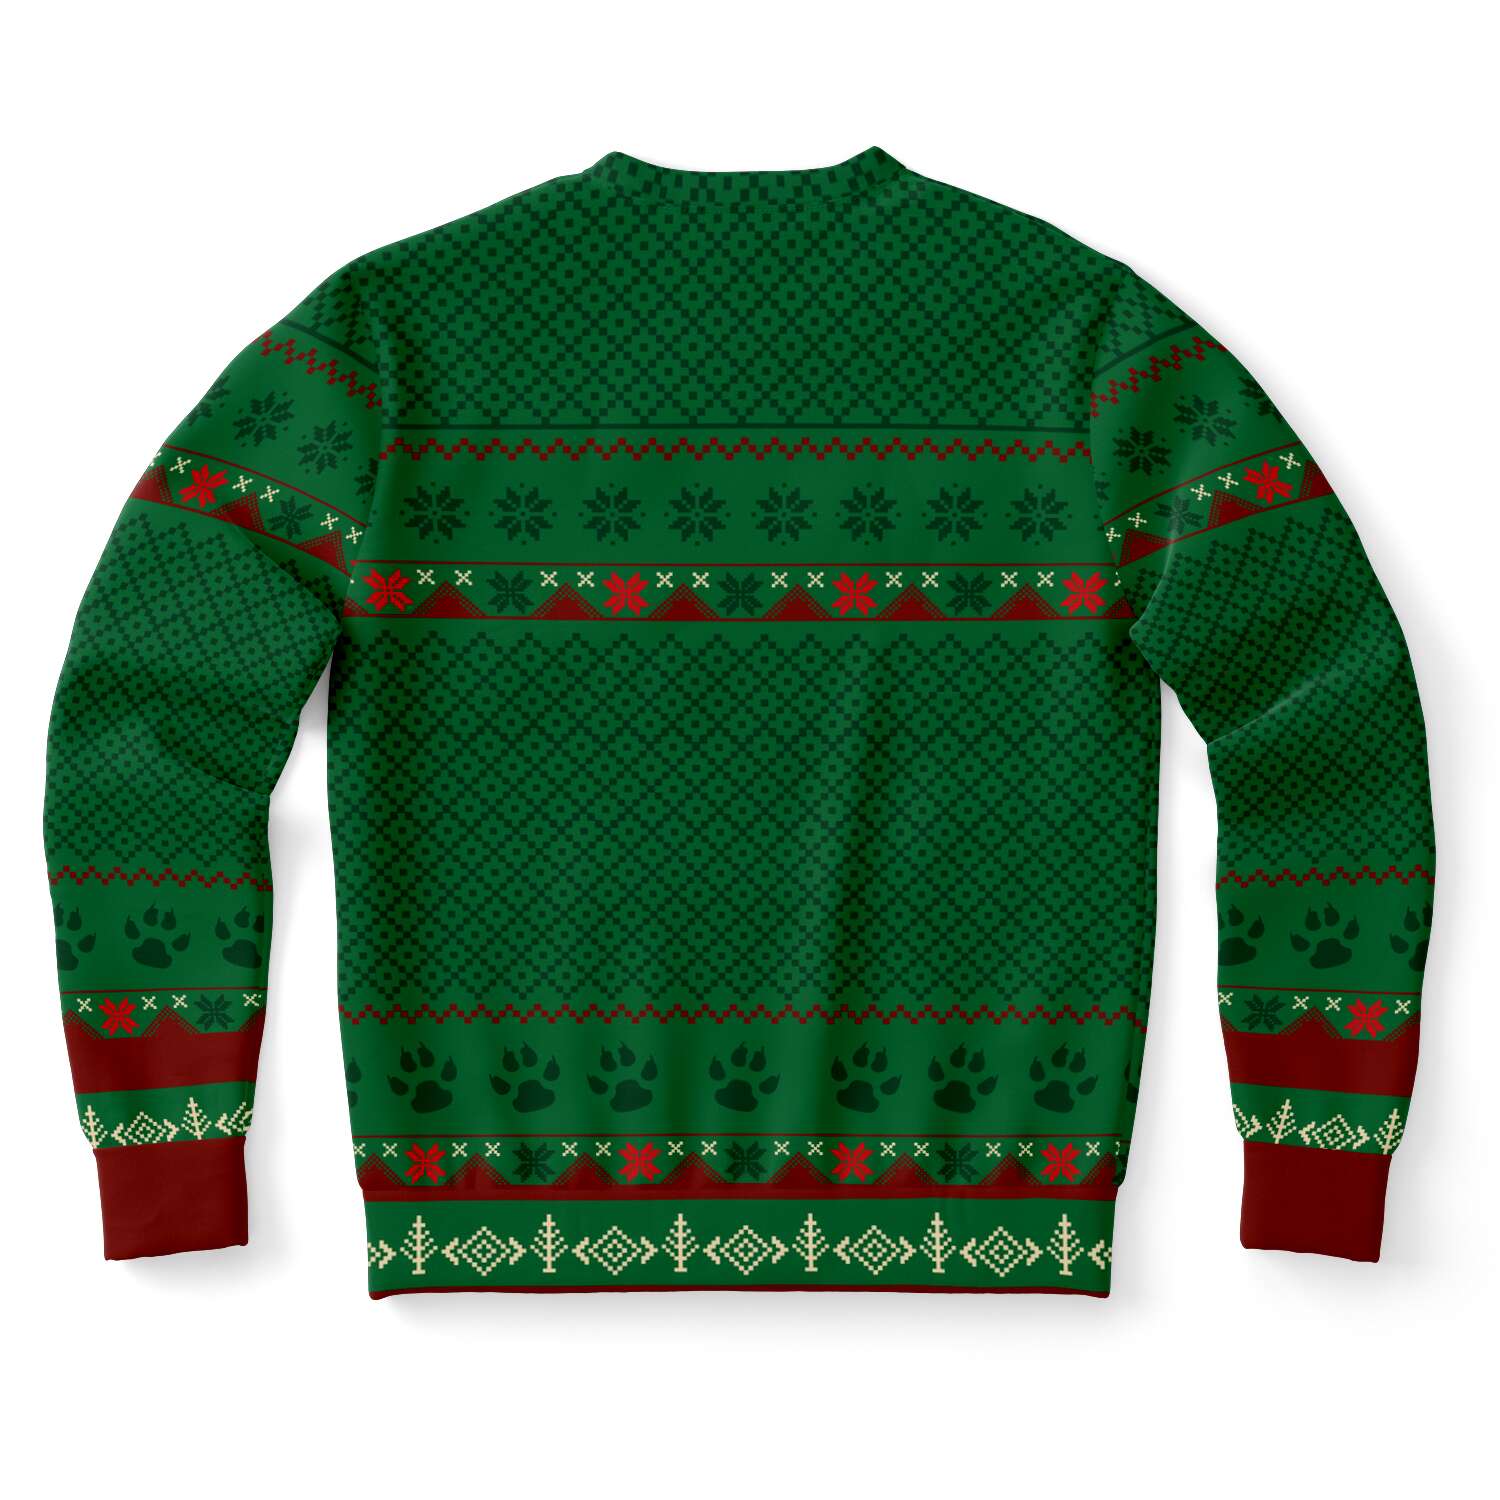 Feliz Navidog - German Shepherd - Funny Dog Lover Ugly Christmas Sweater (Sweatshirt)